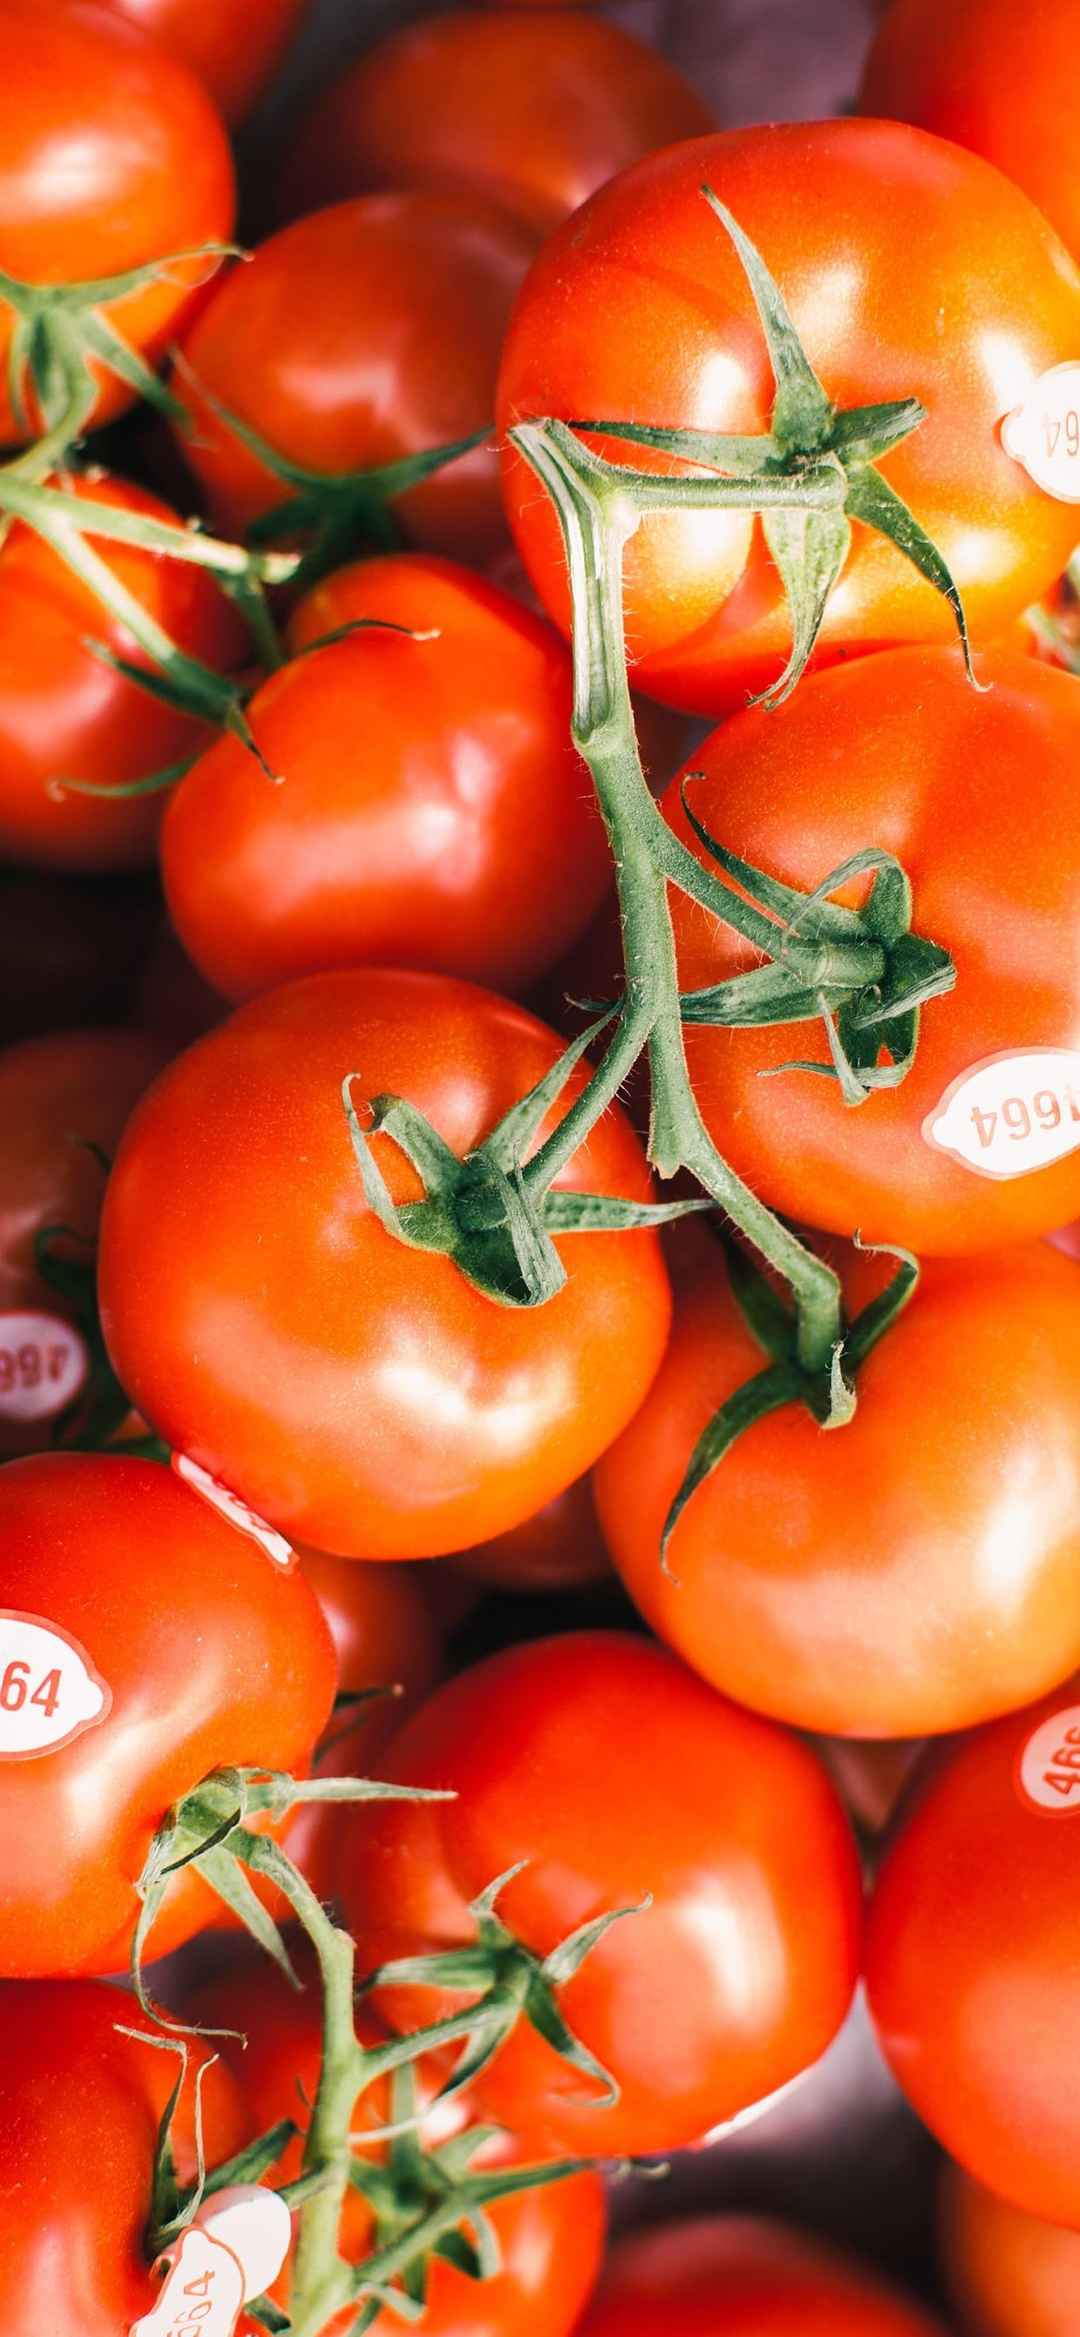 新鲜番茄超好看的动态手机壁纸